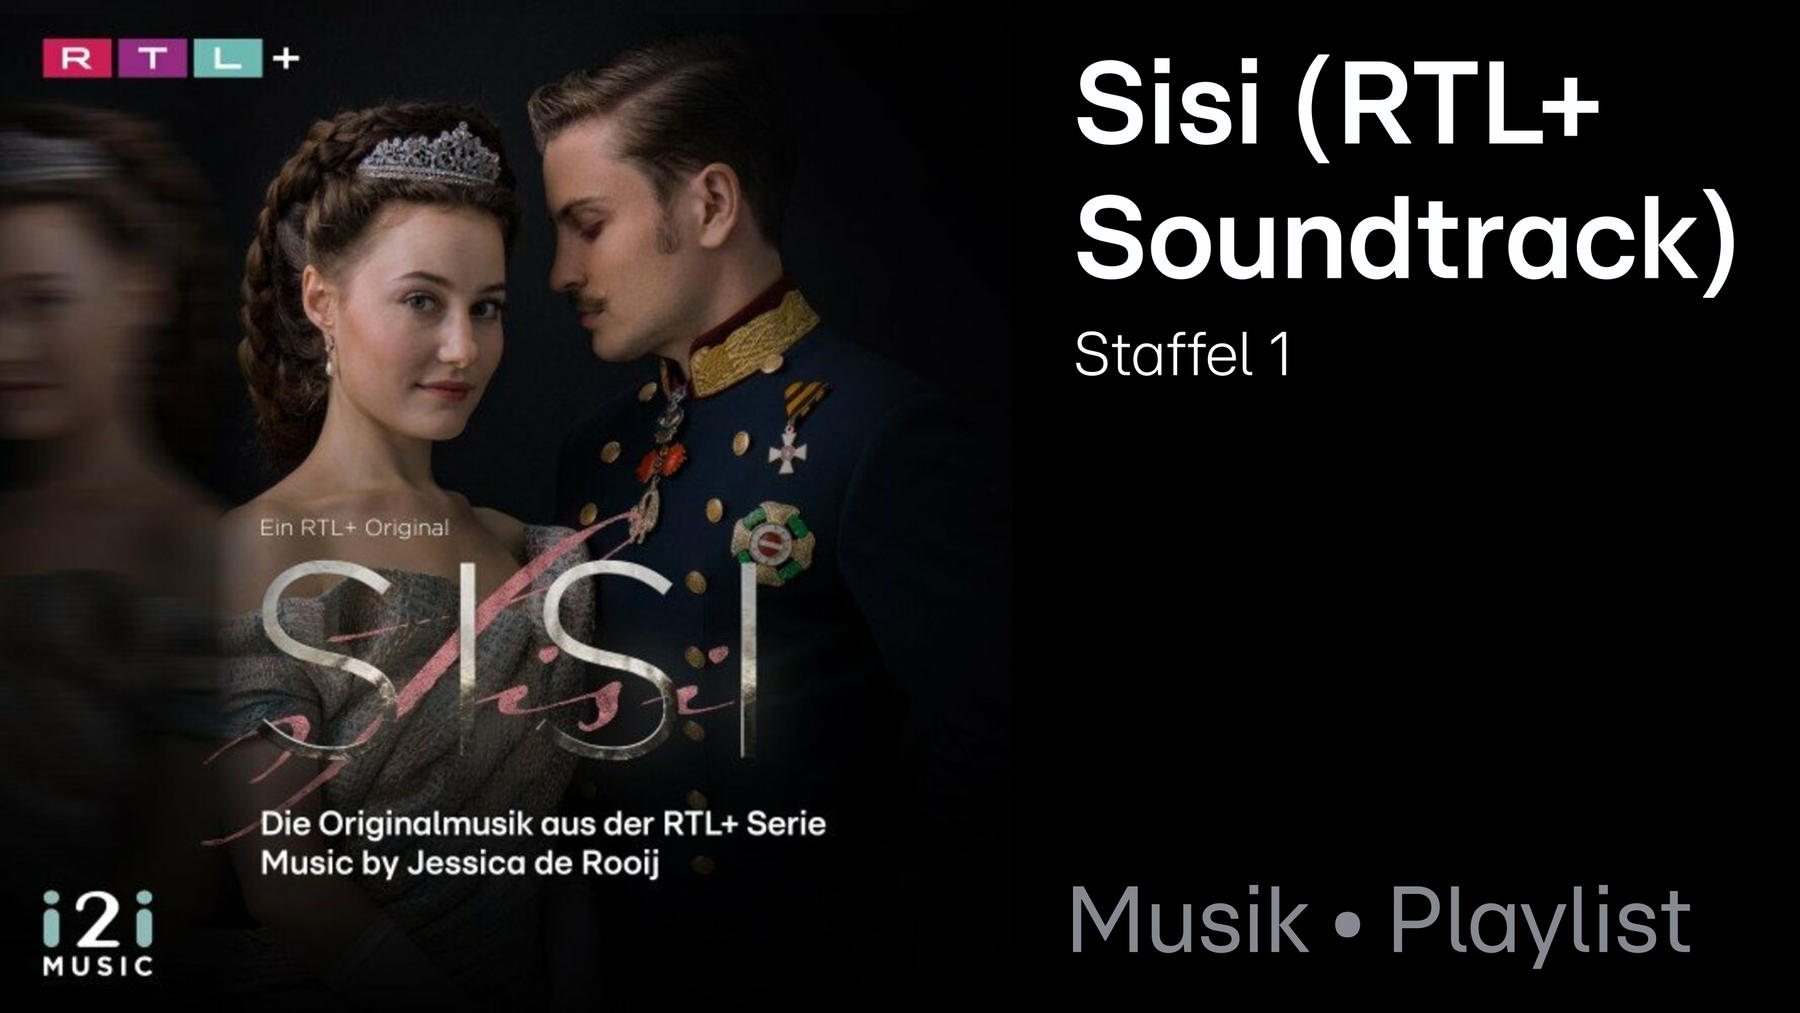 Soundtrack: Sisi (Die Originalmusik aus der RTL+ Serie)